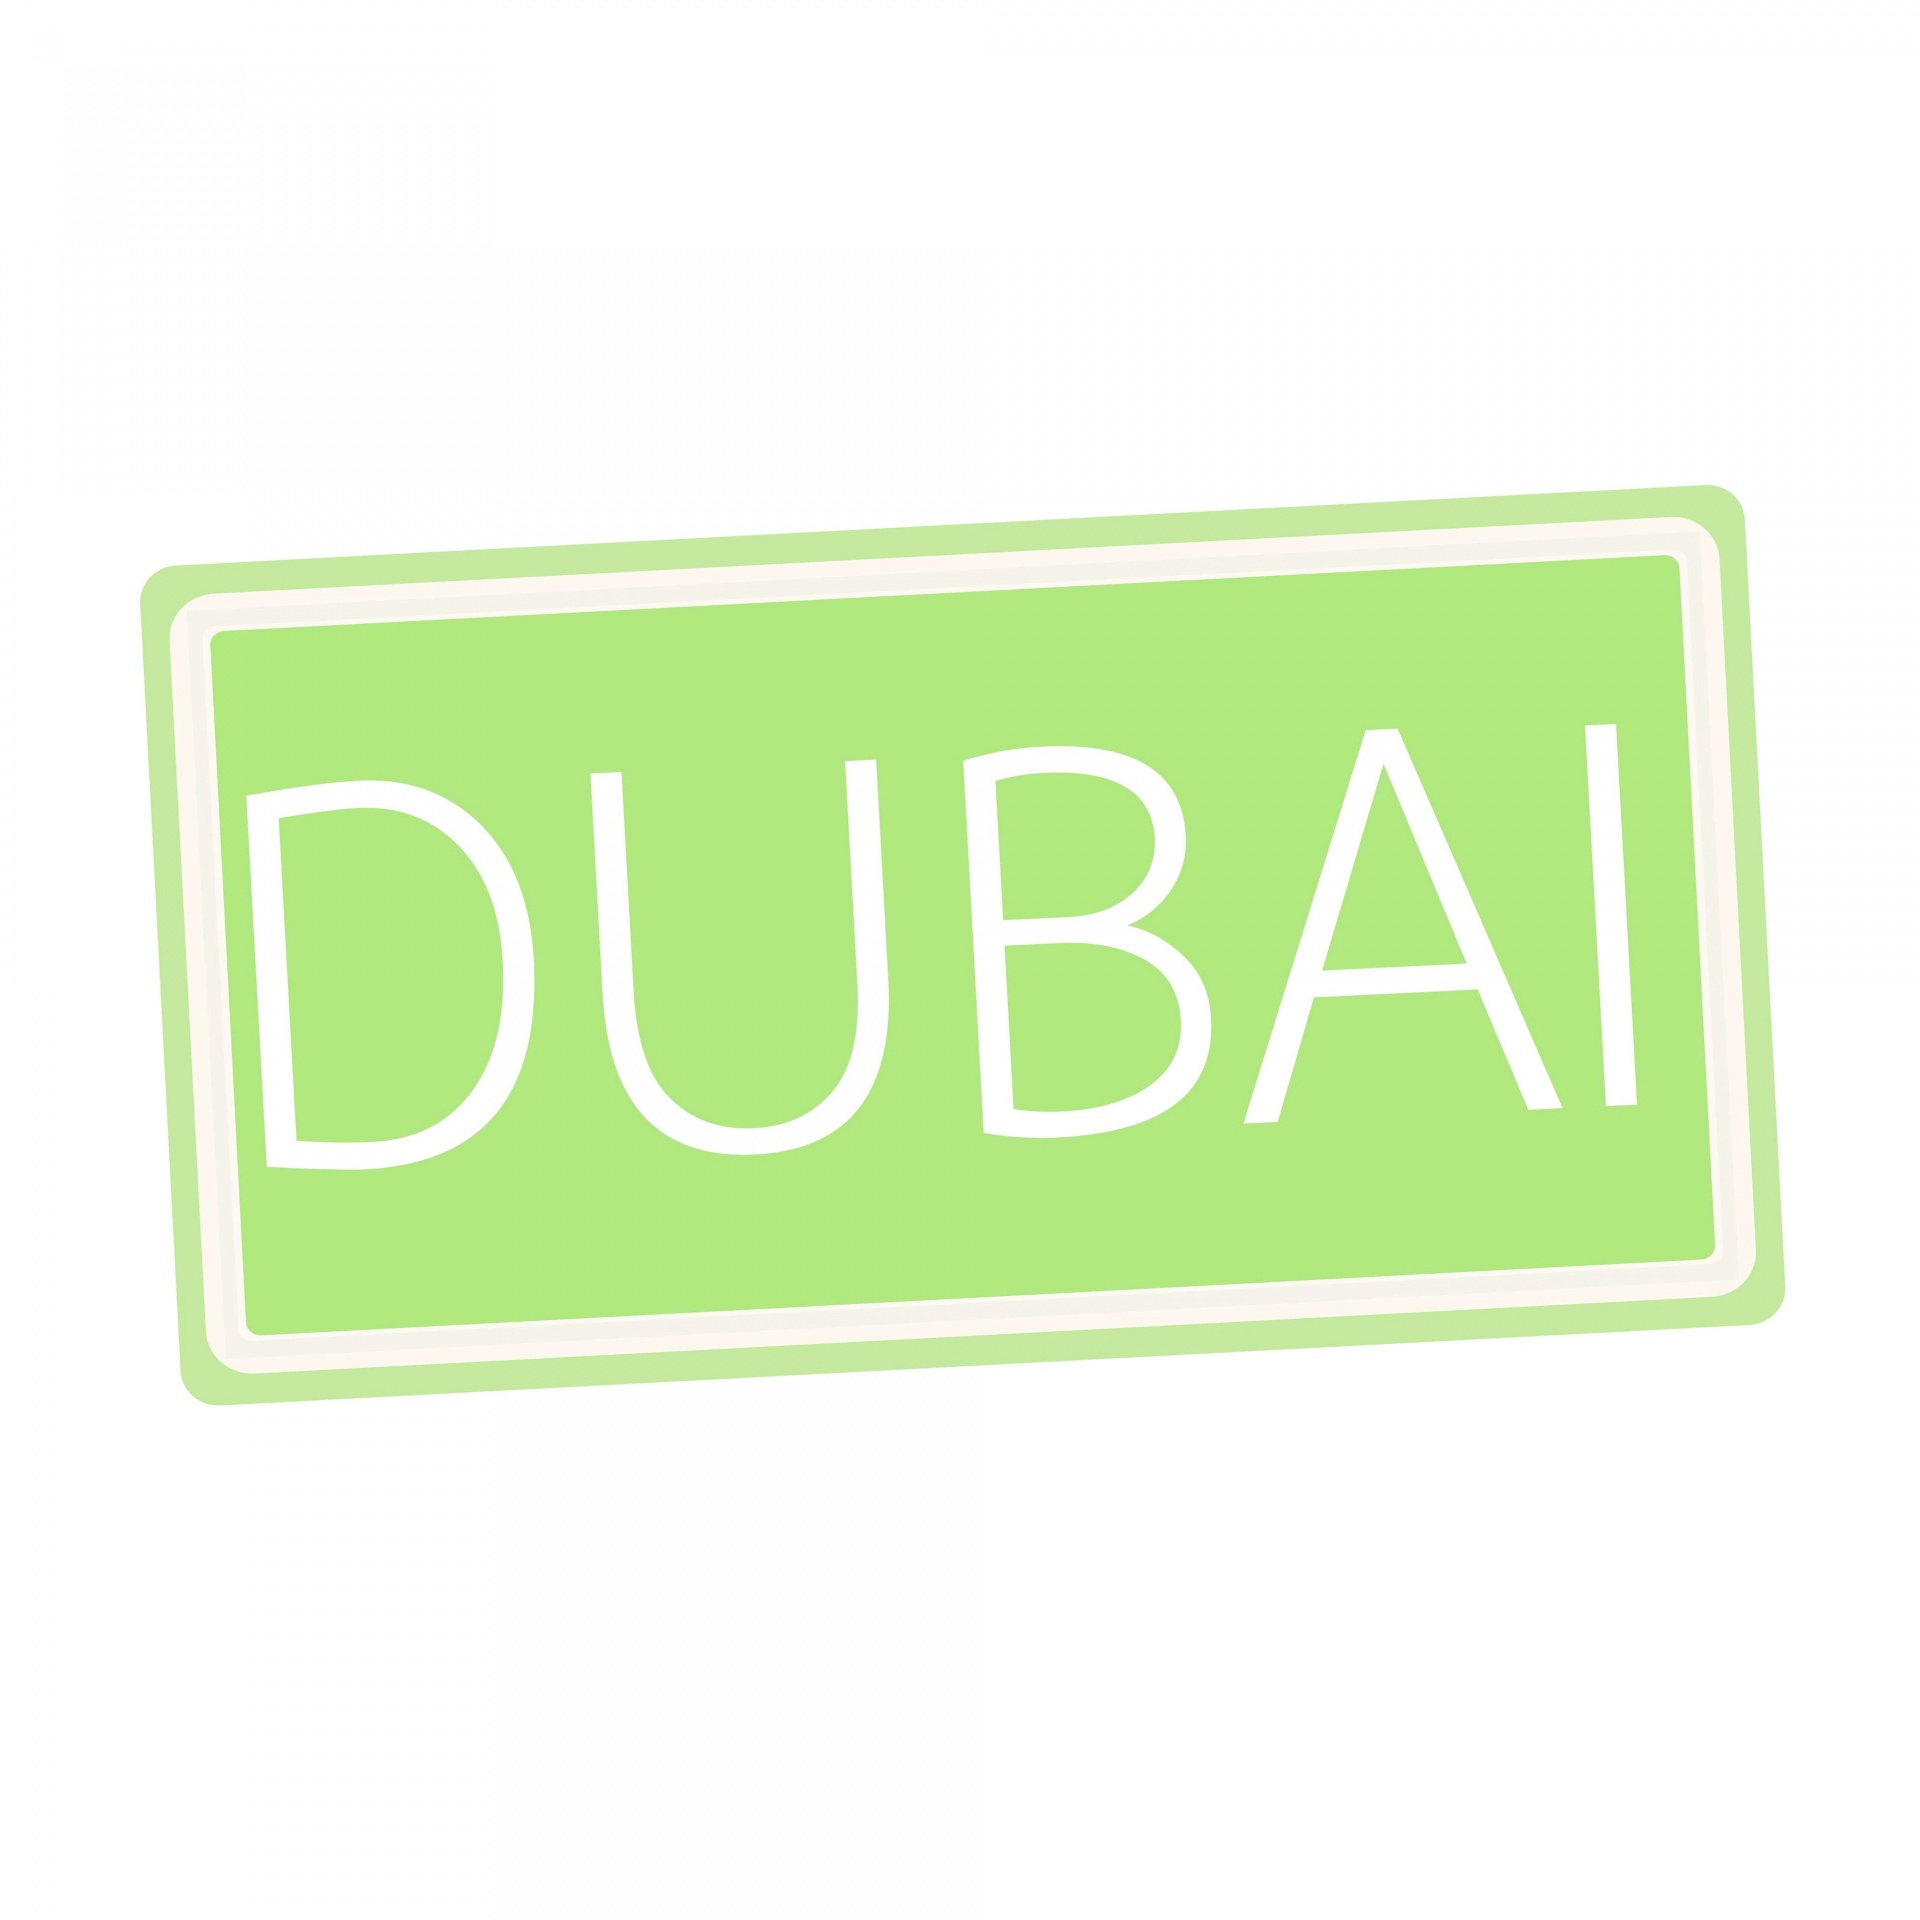 Dubai White Stamp Text On Green